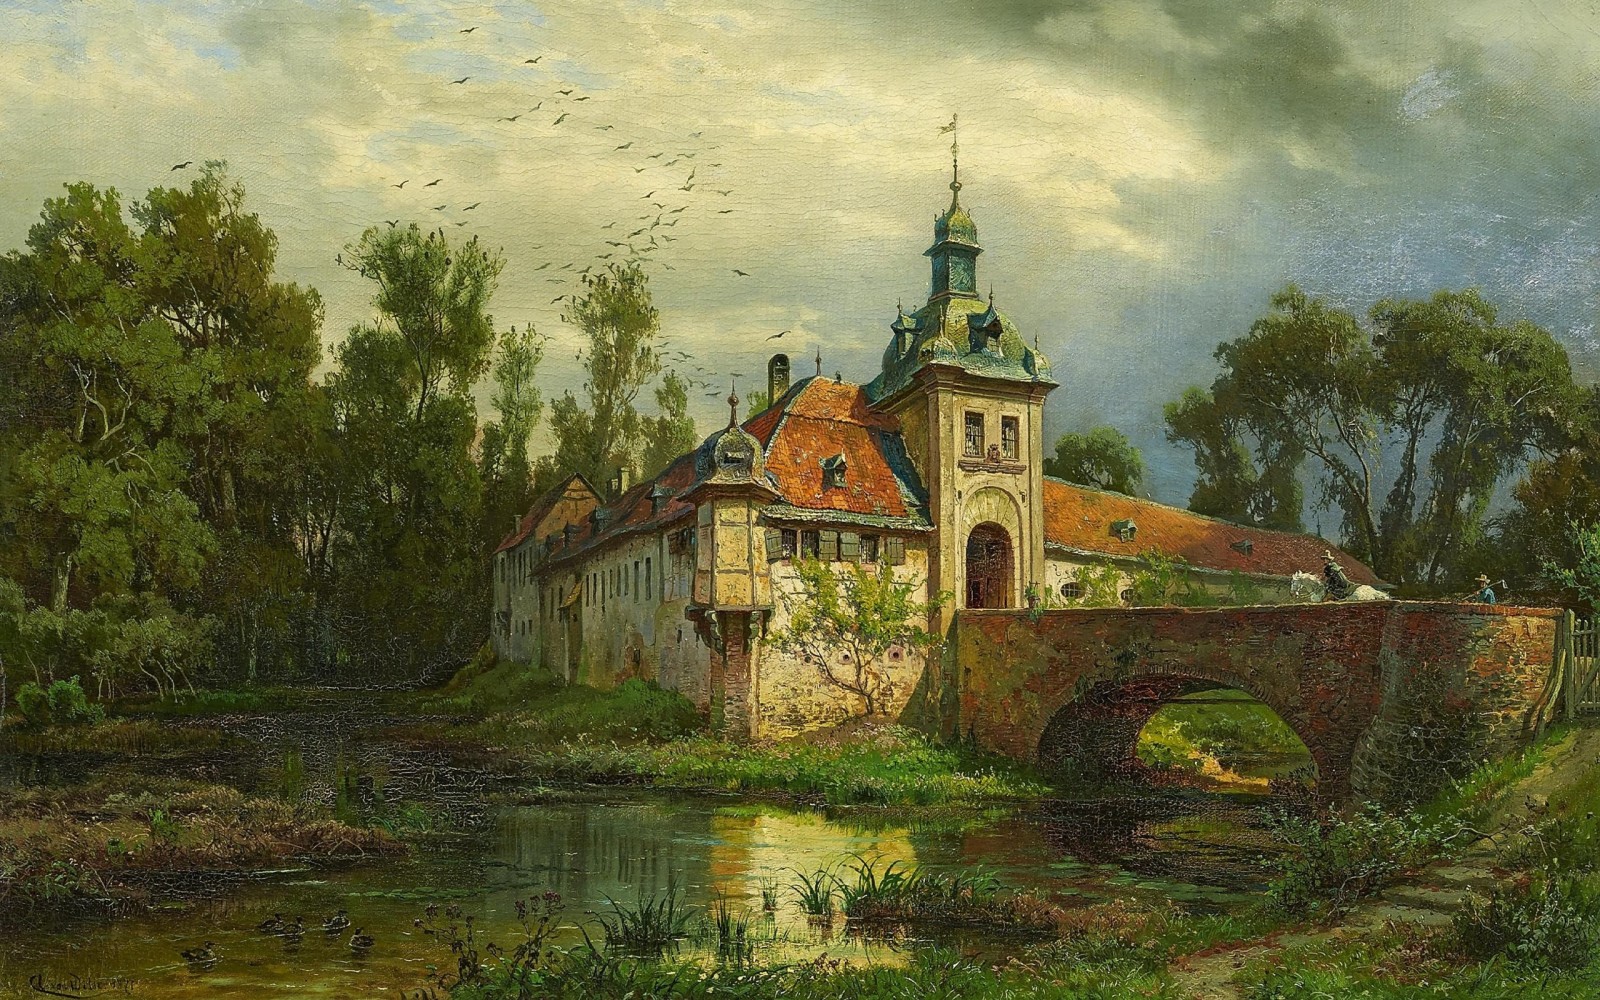 布面油画, 德国风景画家, 1871年, 奥古斯特·莱文·冯·维拉, 奥古斯特·冯·维拉, 骑马回报